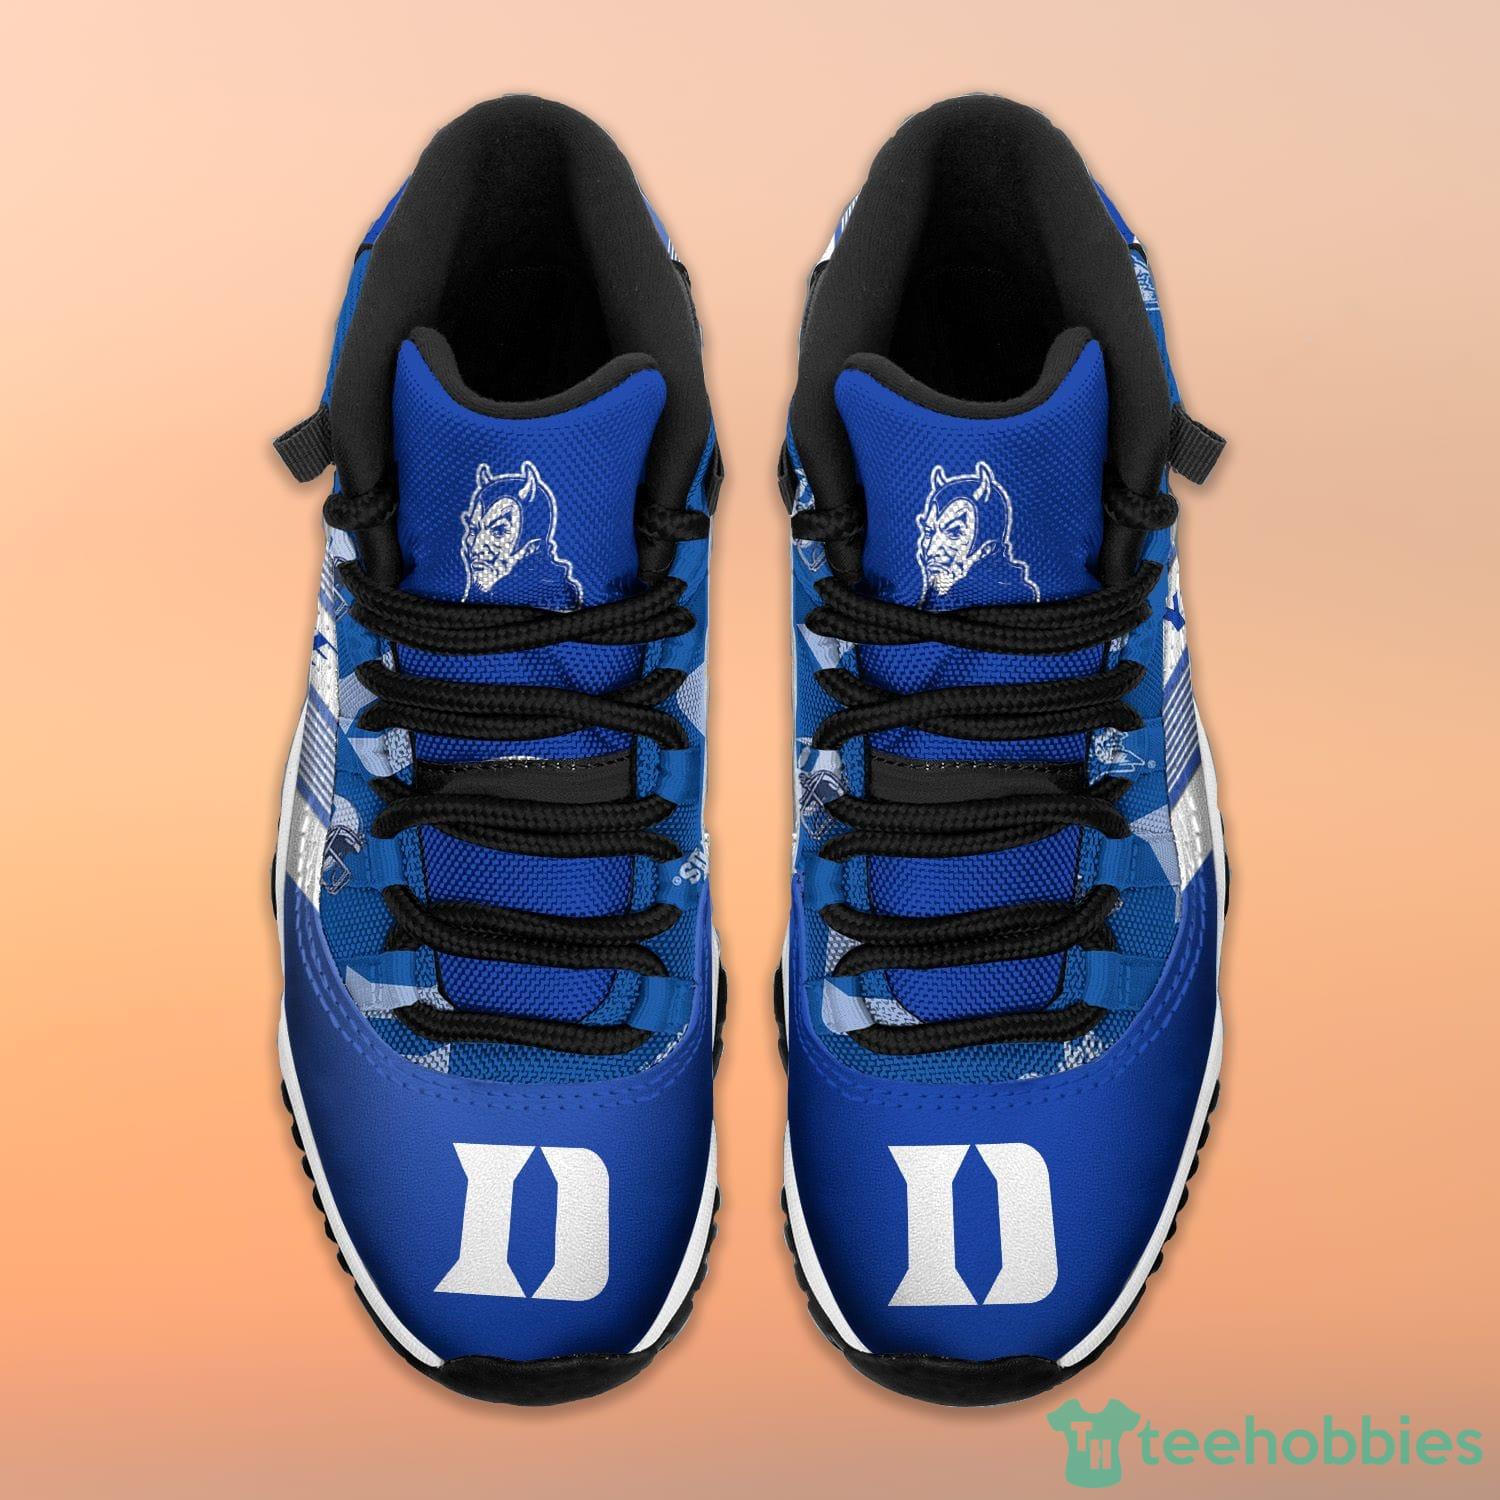 Blue Devils Shoe Charms